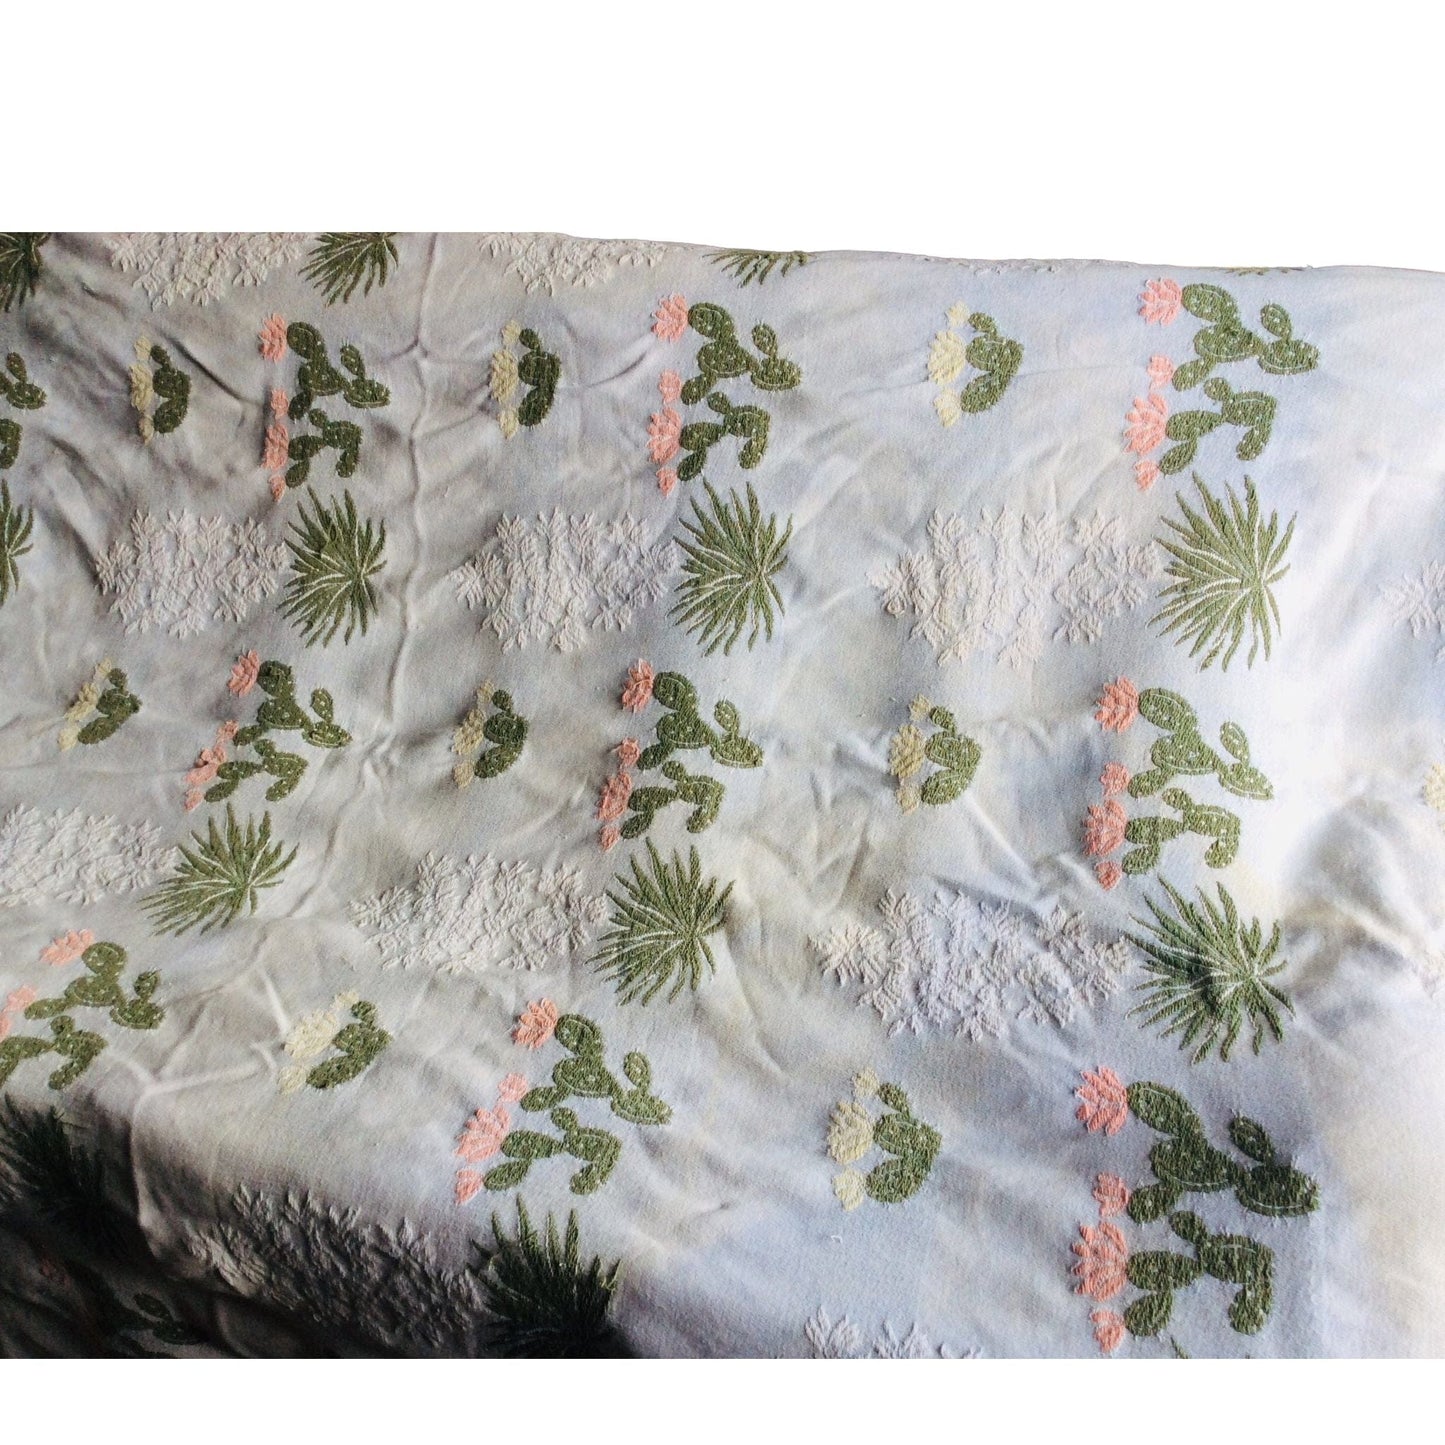 Bates Cactus Bedspread Multi / Cotton / Vintage 1950s